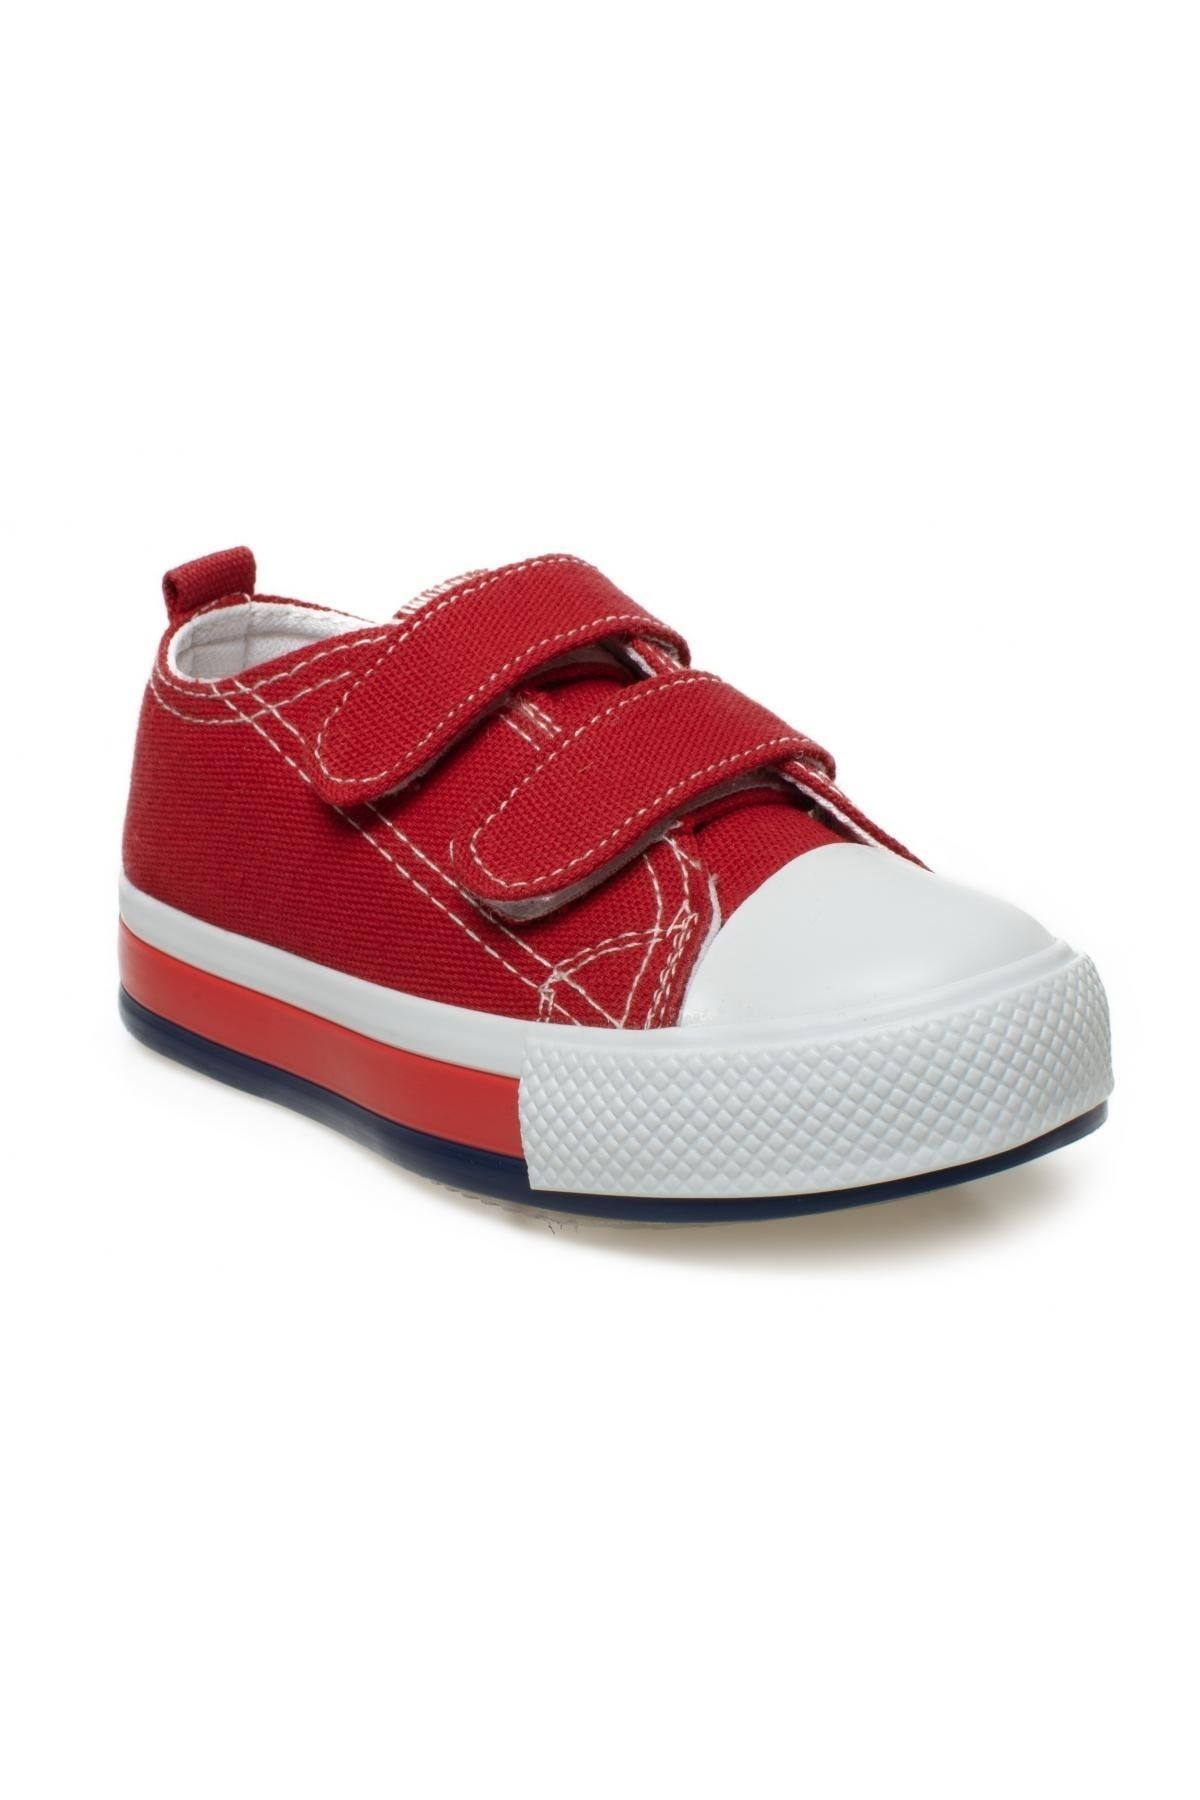 Vicco 925.b22y.253 Pacho Bebe Keten Kırmızı Çocuk Ayakkabı